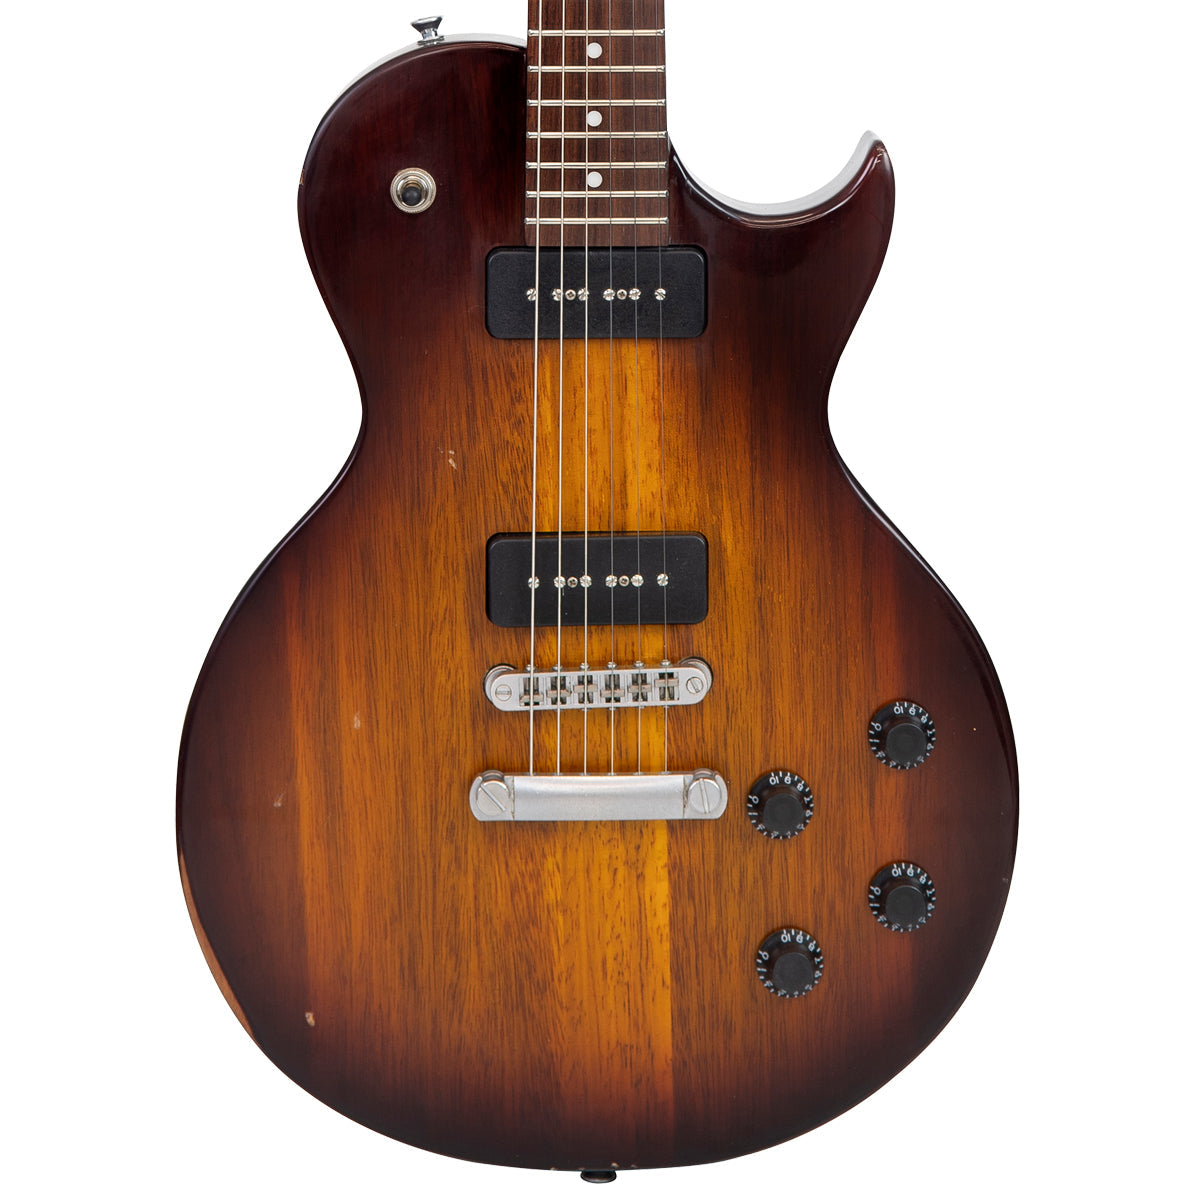 SOLD - Vintage V132 ProShop Unique ~ Relic, Electric Guitars for sale at Richards Guitars.